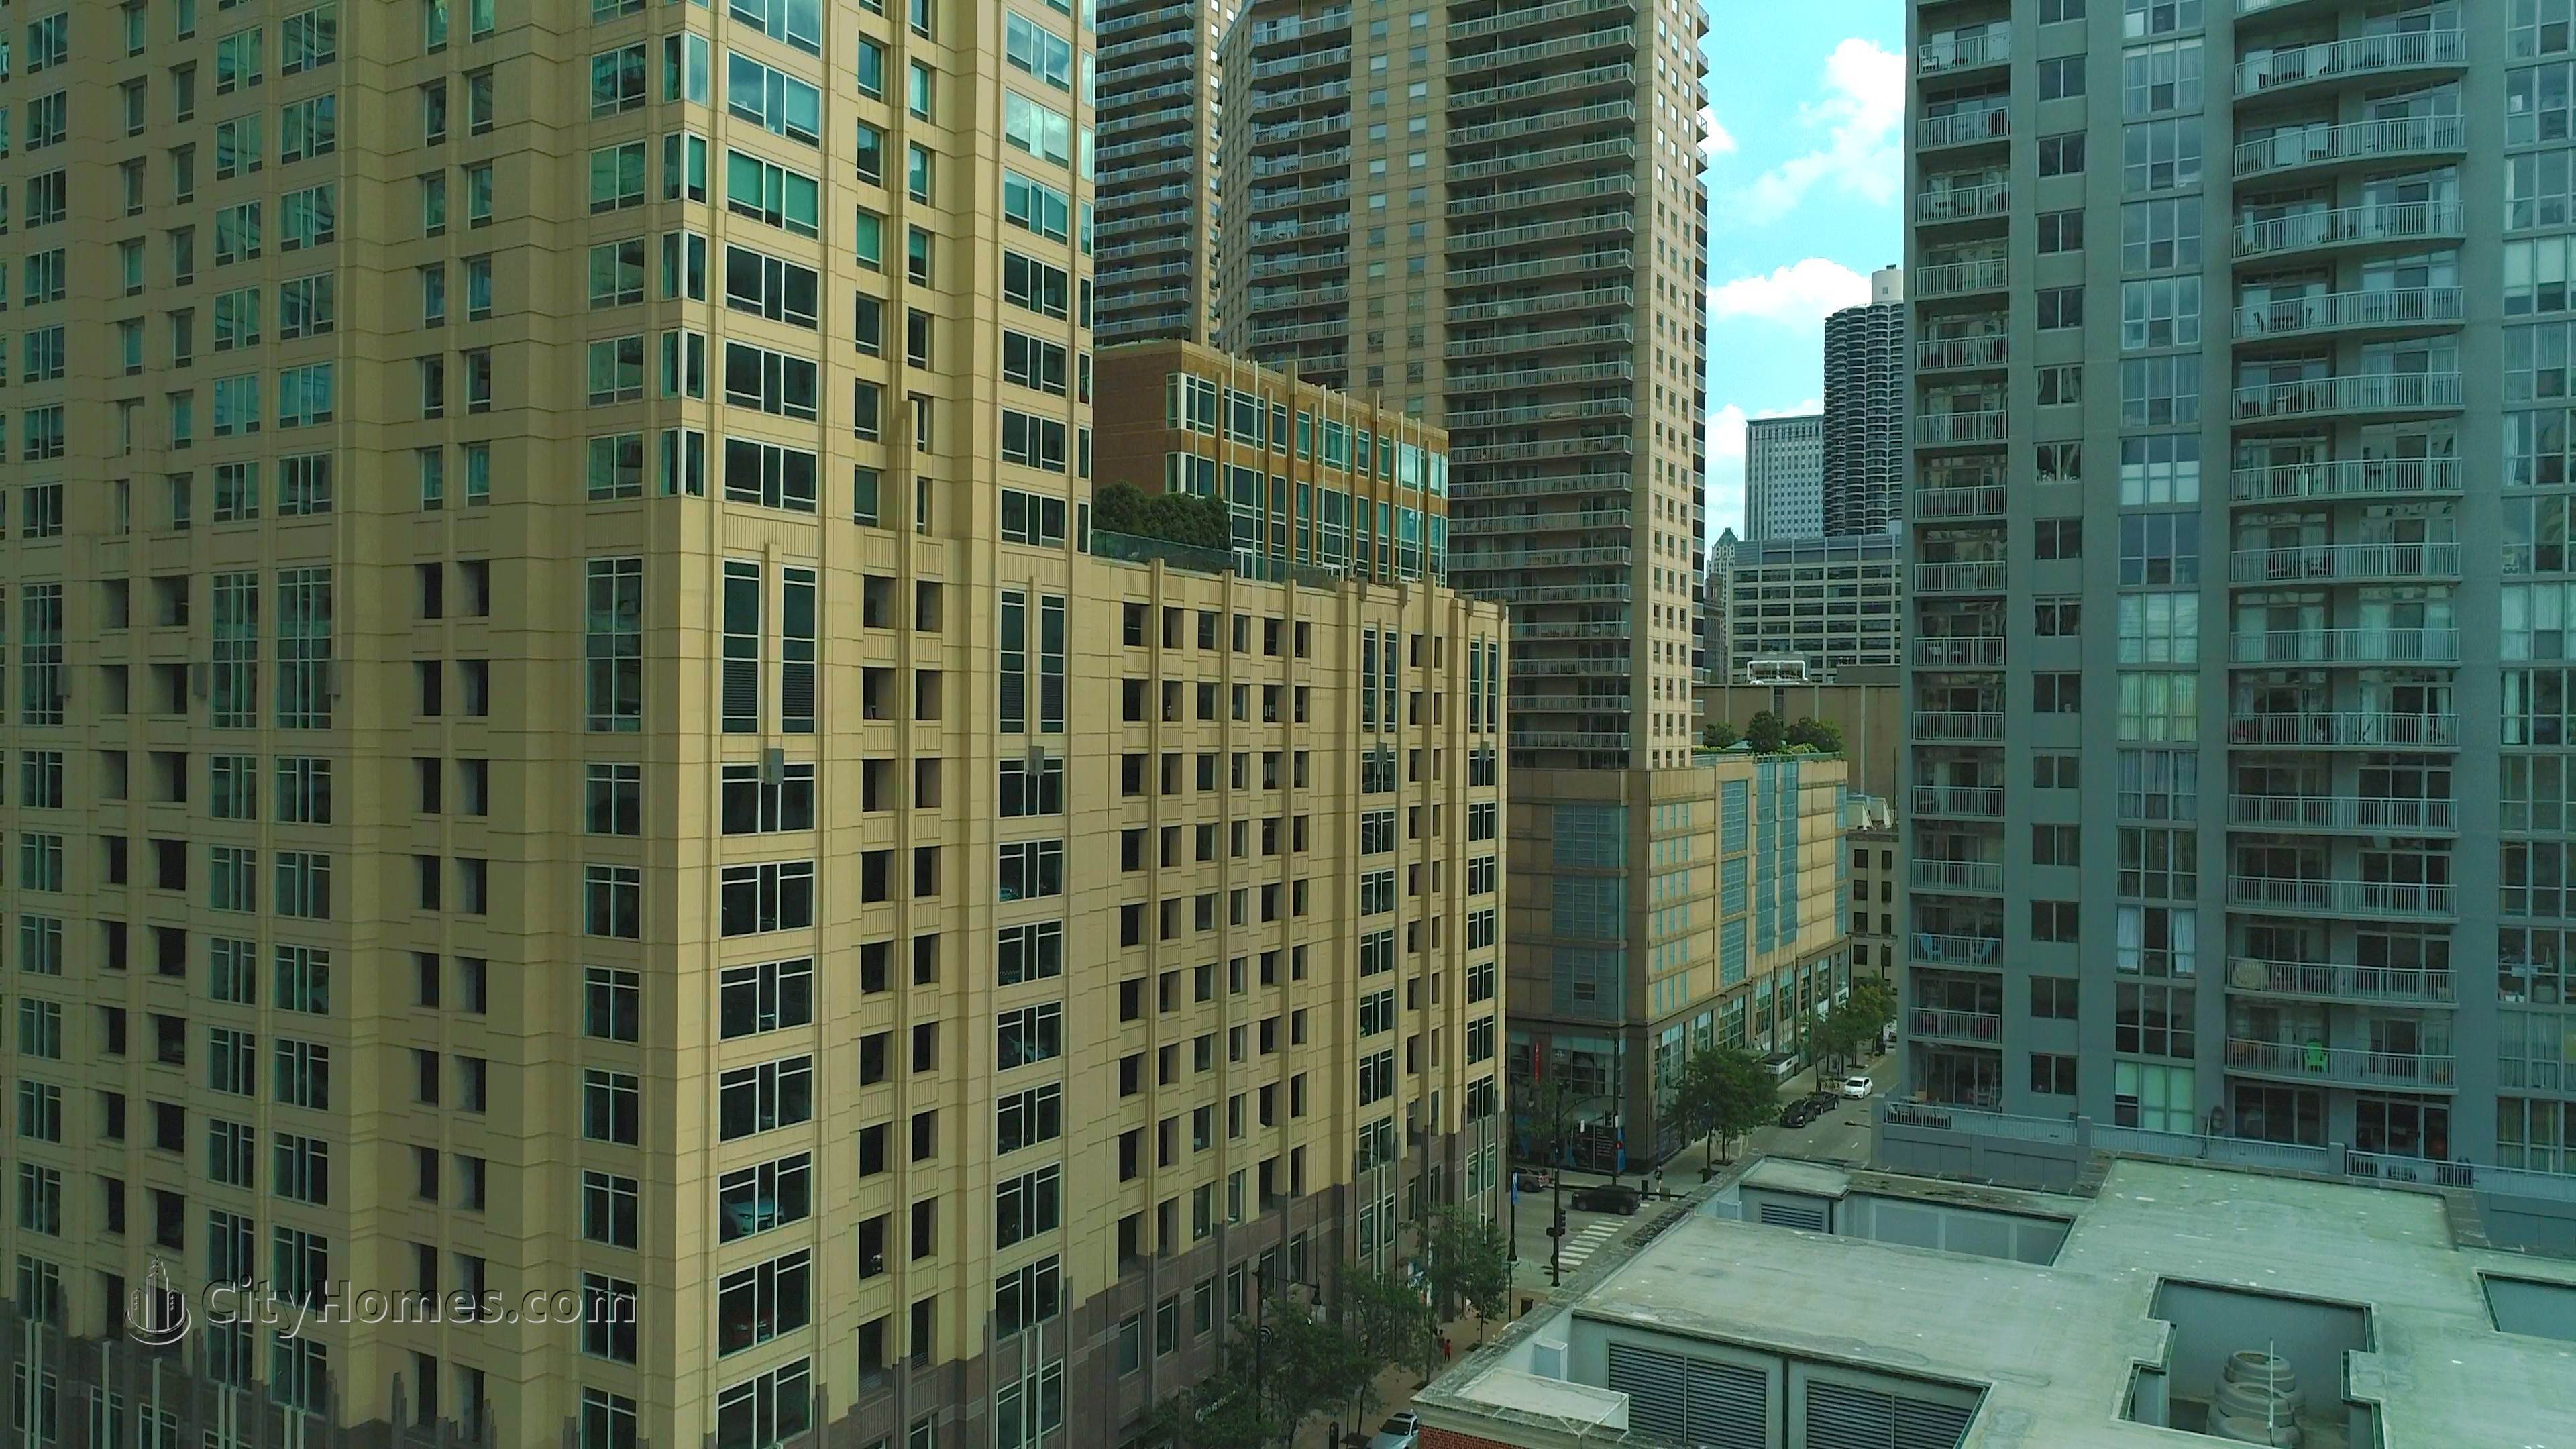 Millennium Centre byggnad vid 33 W Ontario St, Central Chicago, Chicago, IL 60610